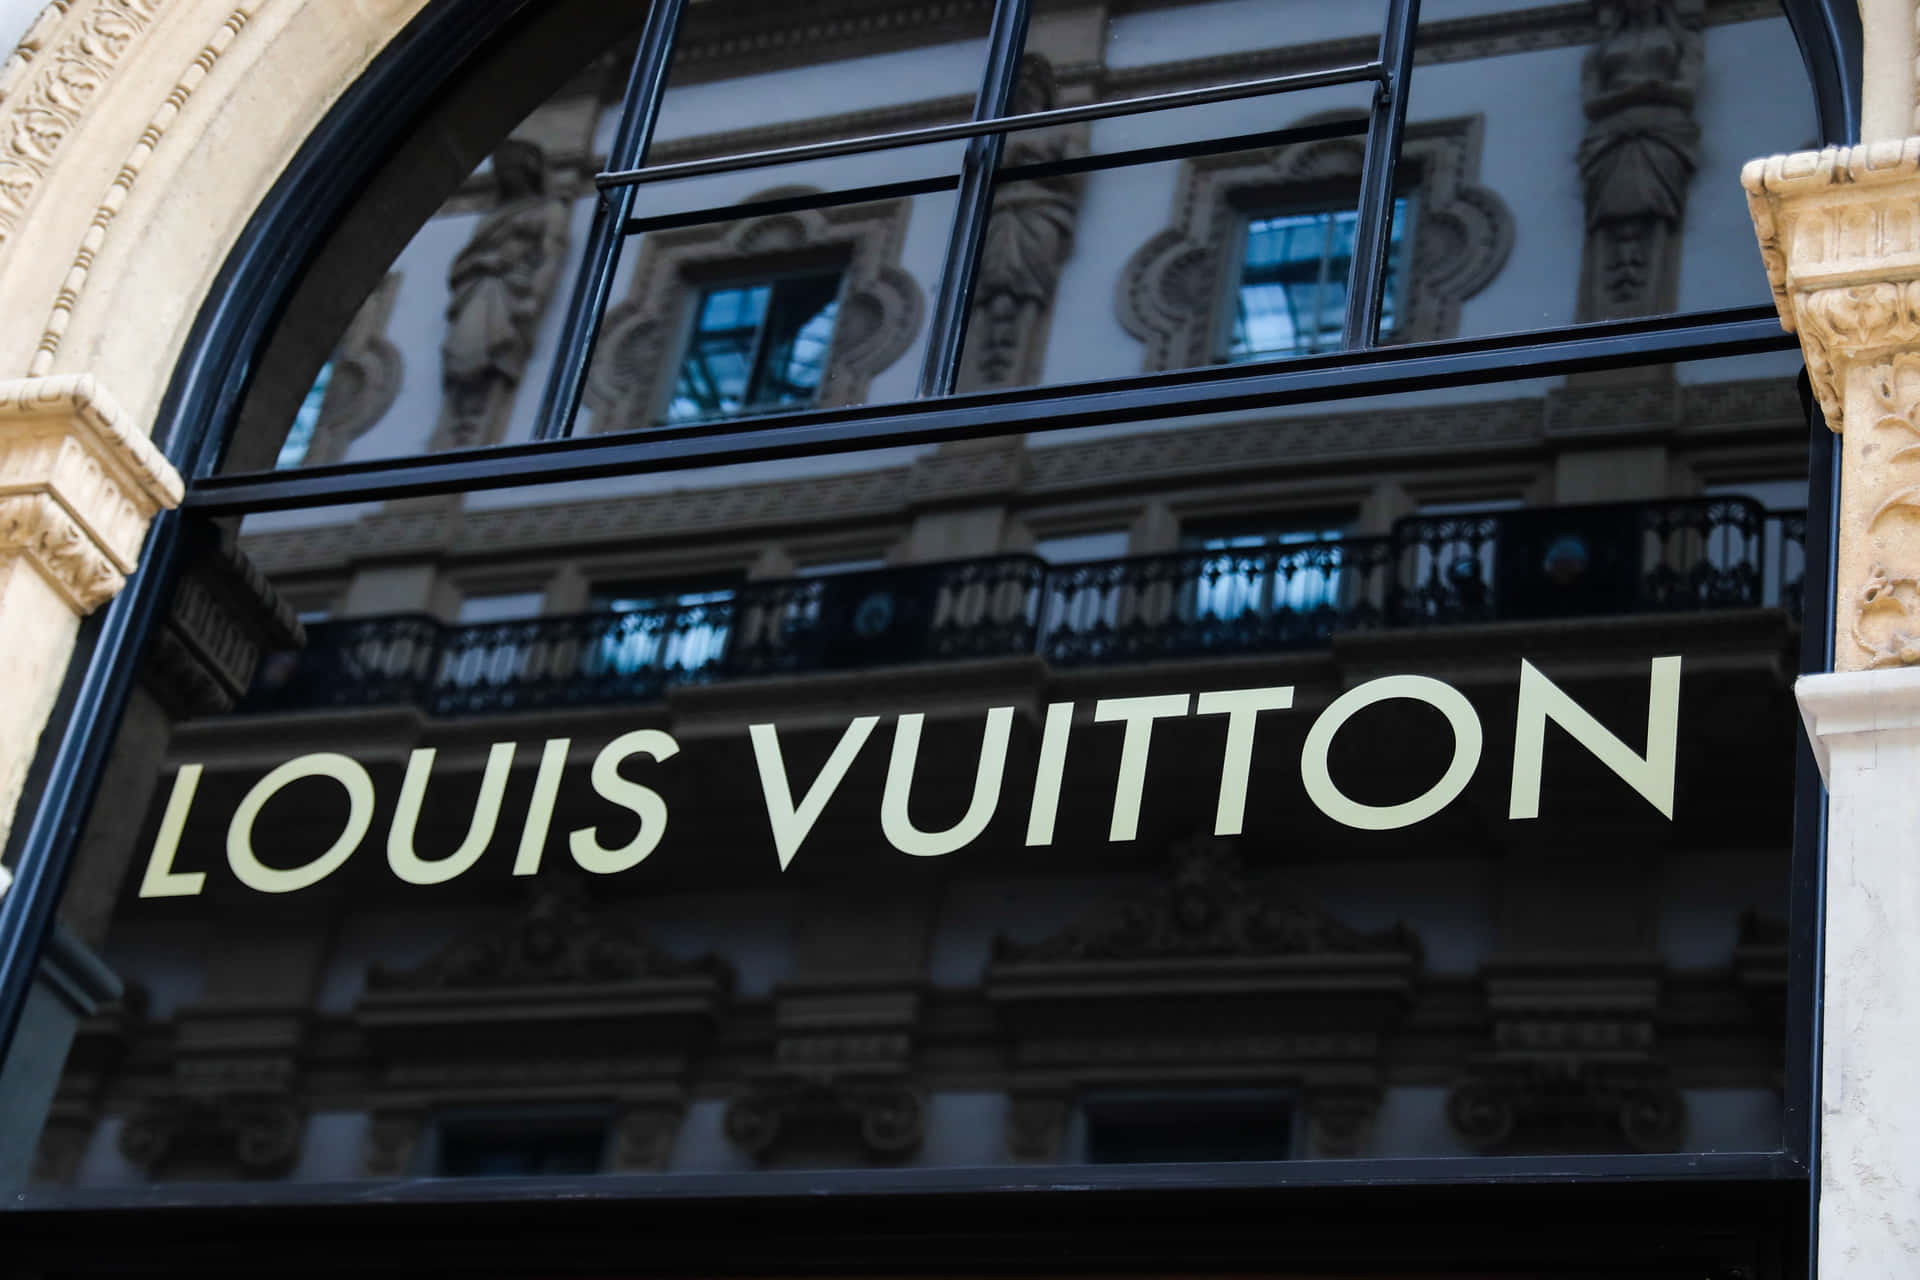 200+] Louis Vuitton Pictures